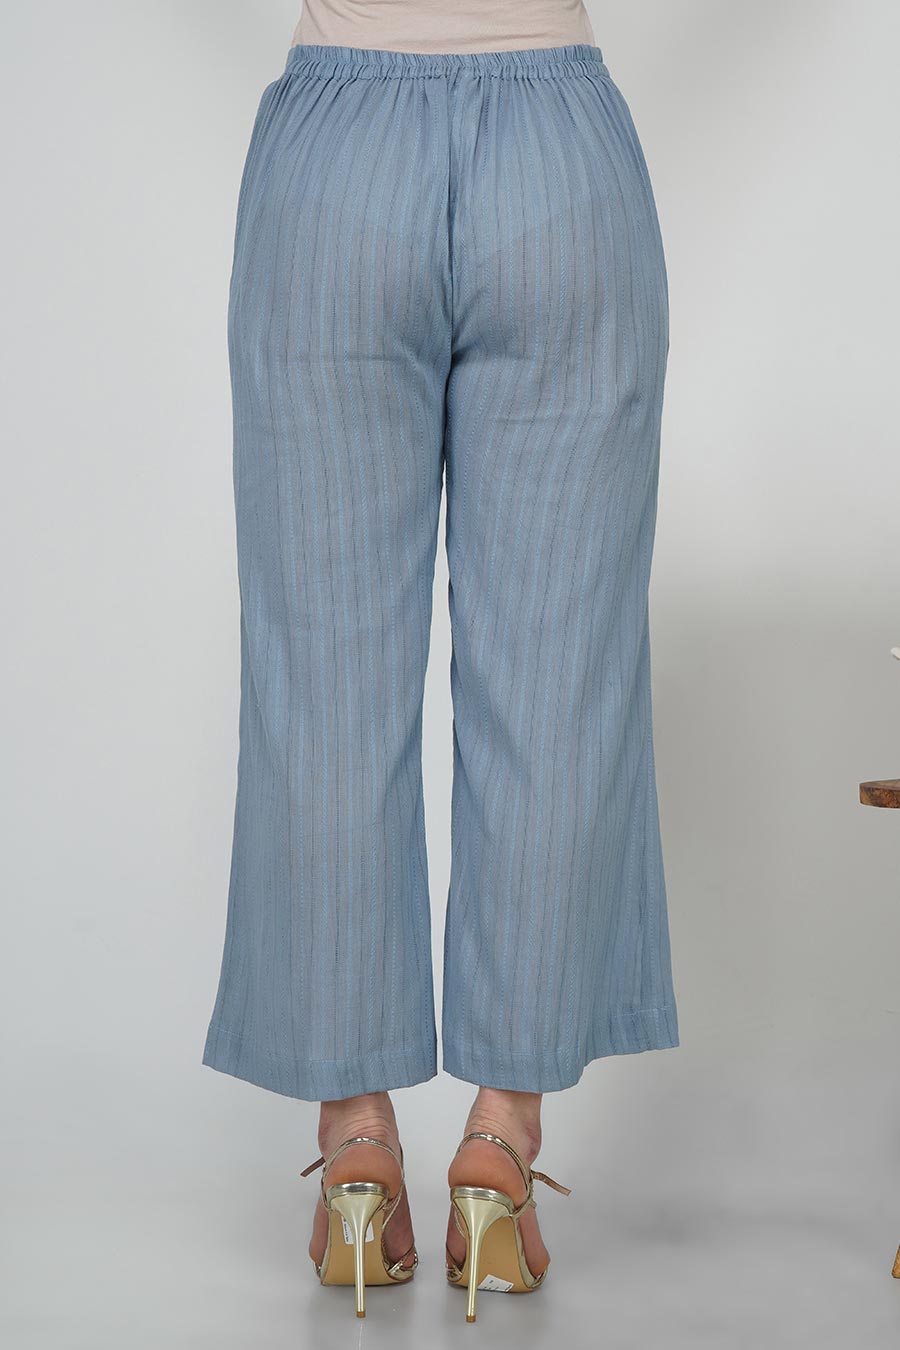 Lavender Leno Cotton Striped Pants